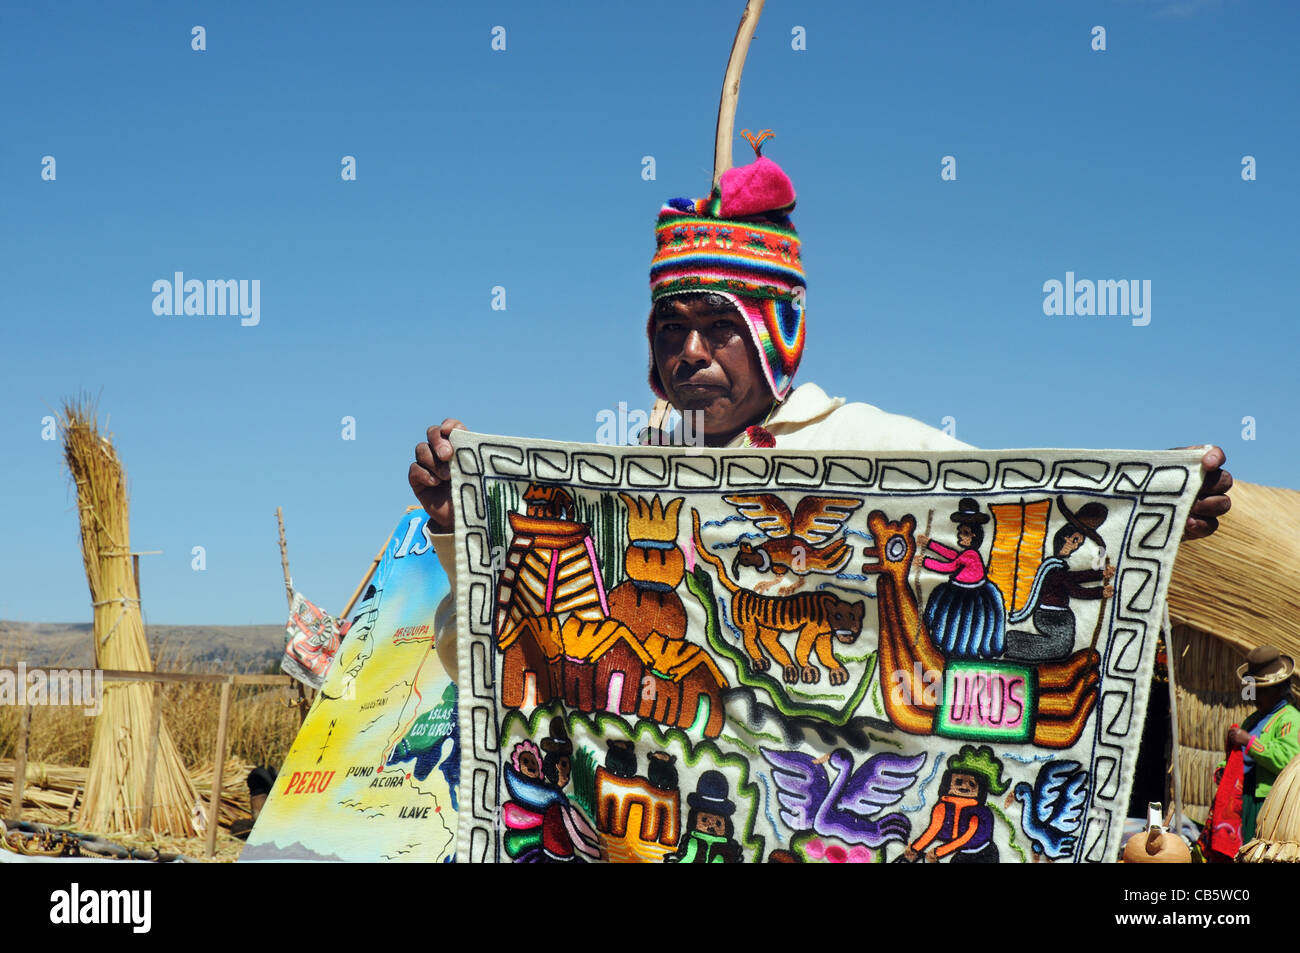 Un uros islander vendiendo un tapiz fabricado localmente, las Islas de los Uros, Lago Titicaca, Perú Foto de stock